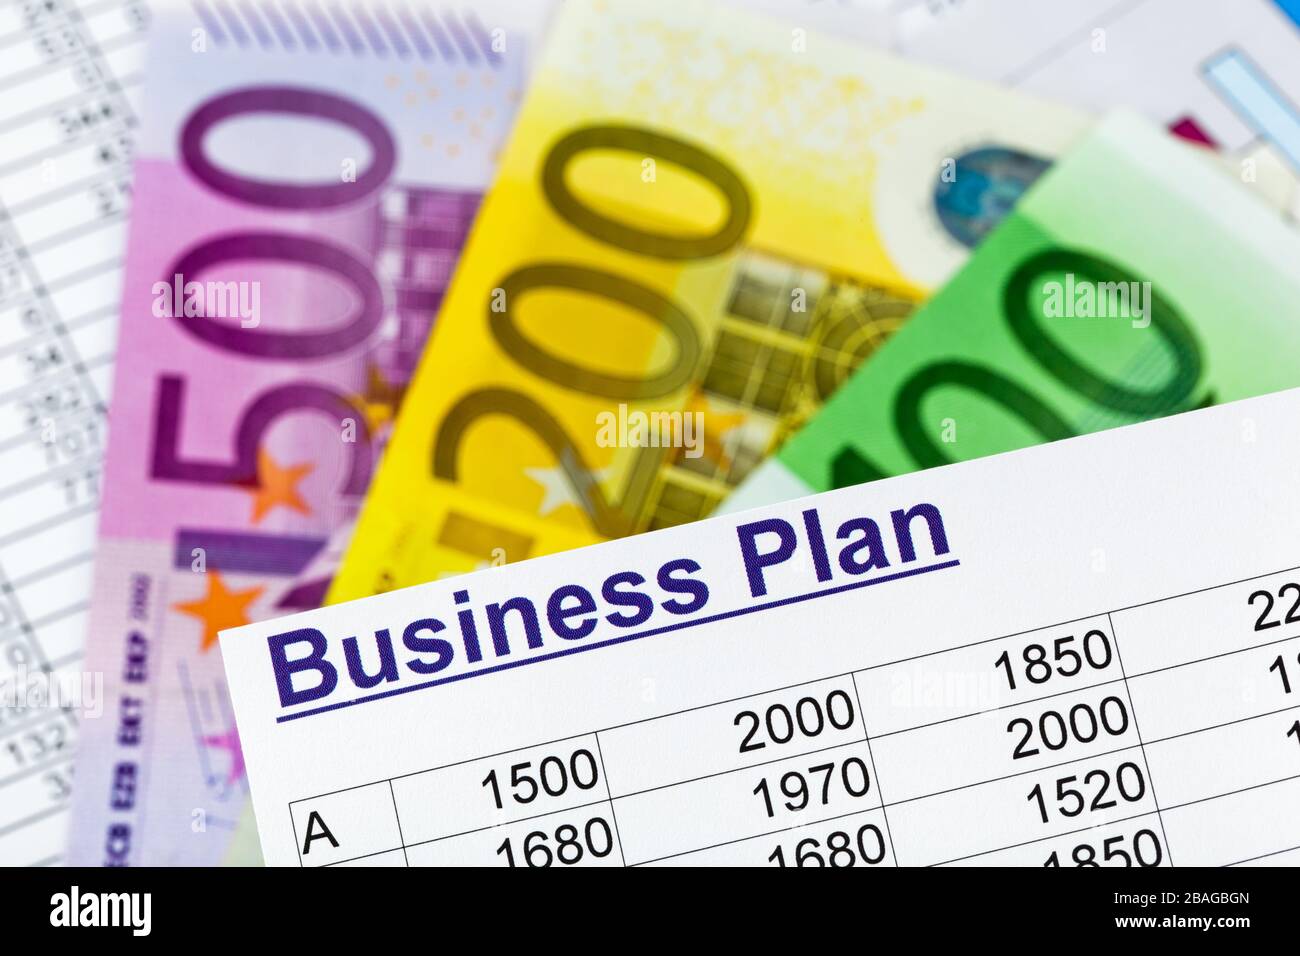 Viele Euro Geldscheine der Europaeischen Union, Businessplan Stock Photo